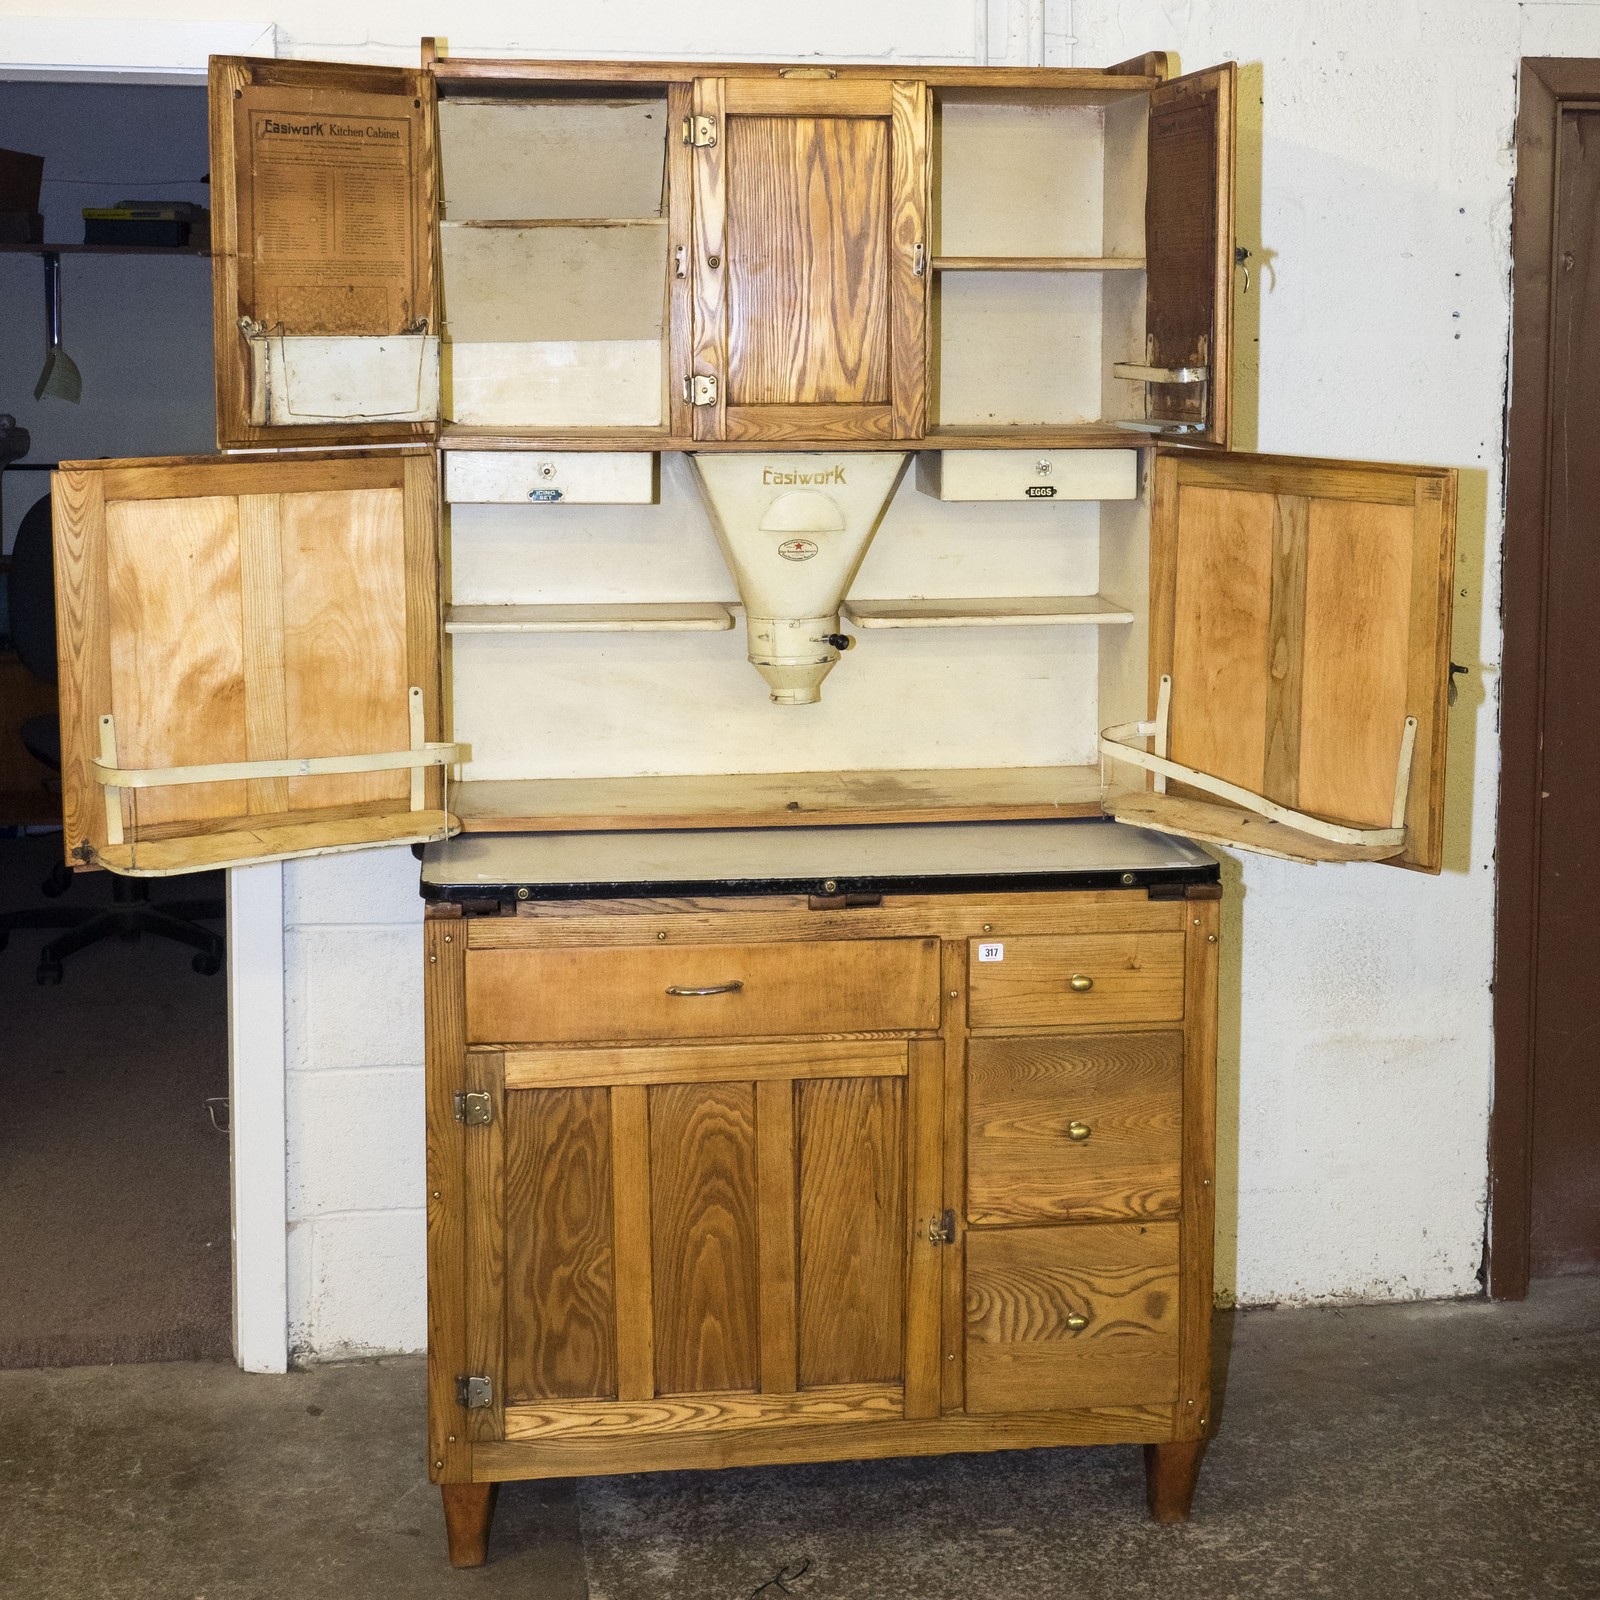 Restored Easiwork 1920s kitchen cabinet with original labeling, flour hopper, egg drawer, icing